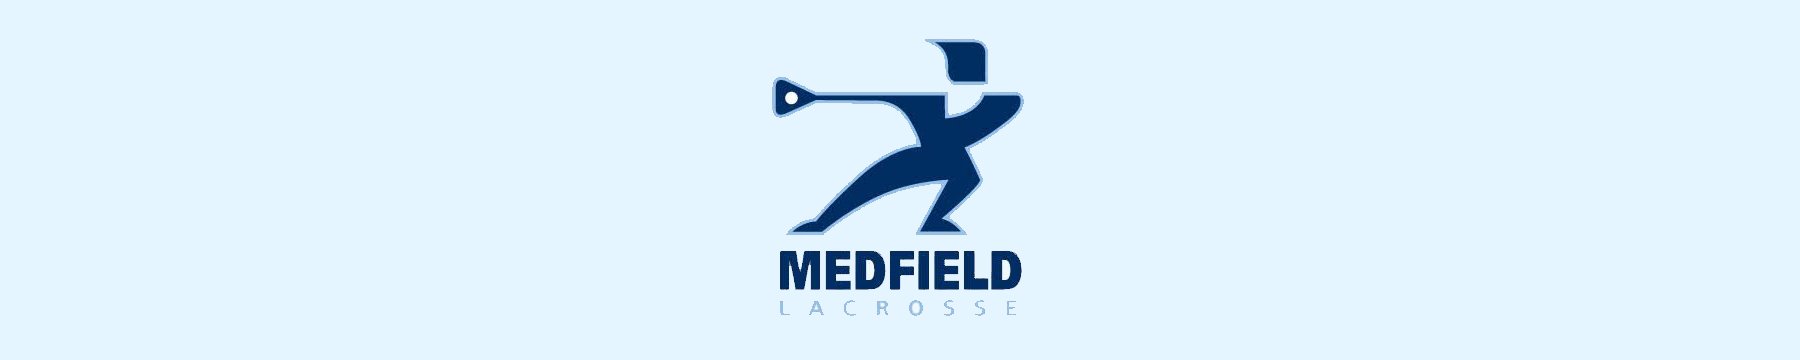 Medfield Boys Lacrosse